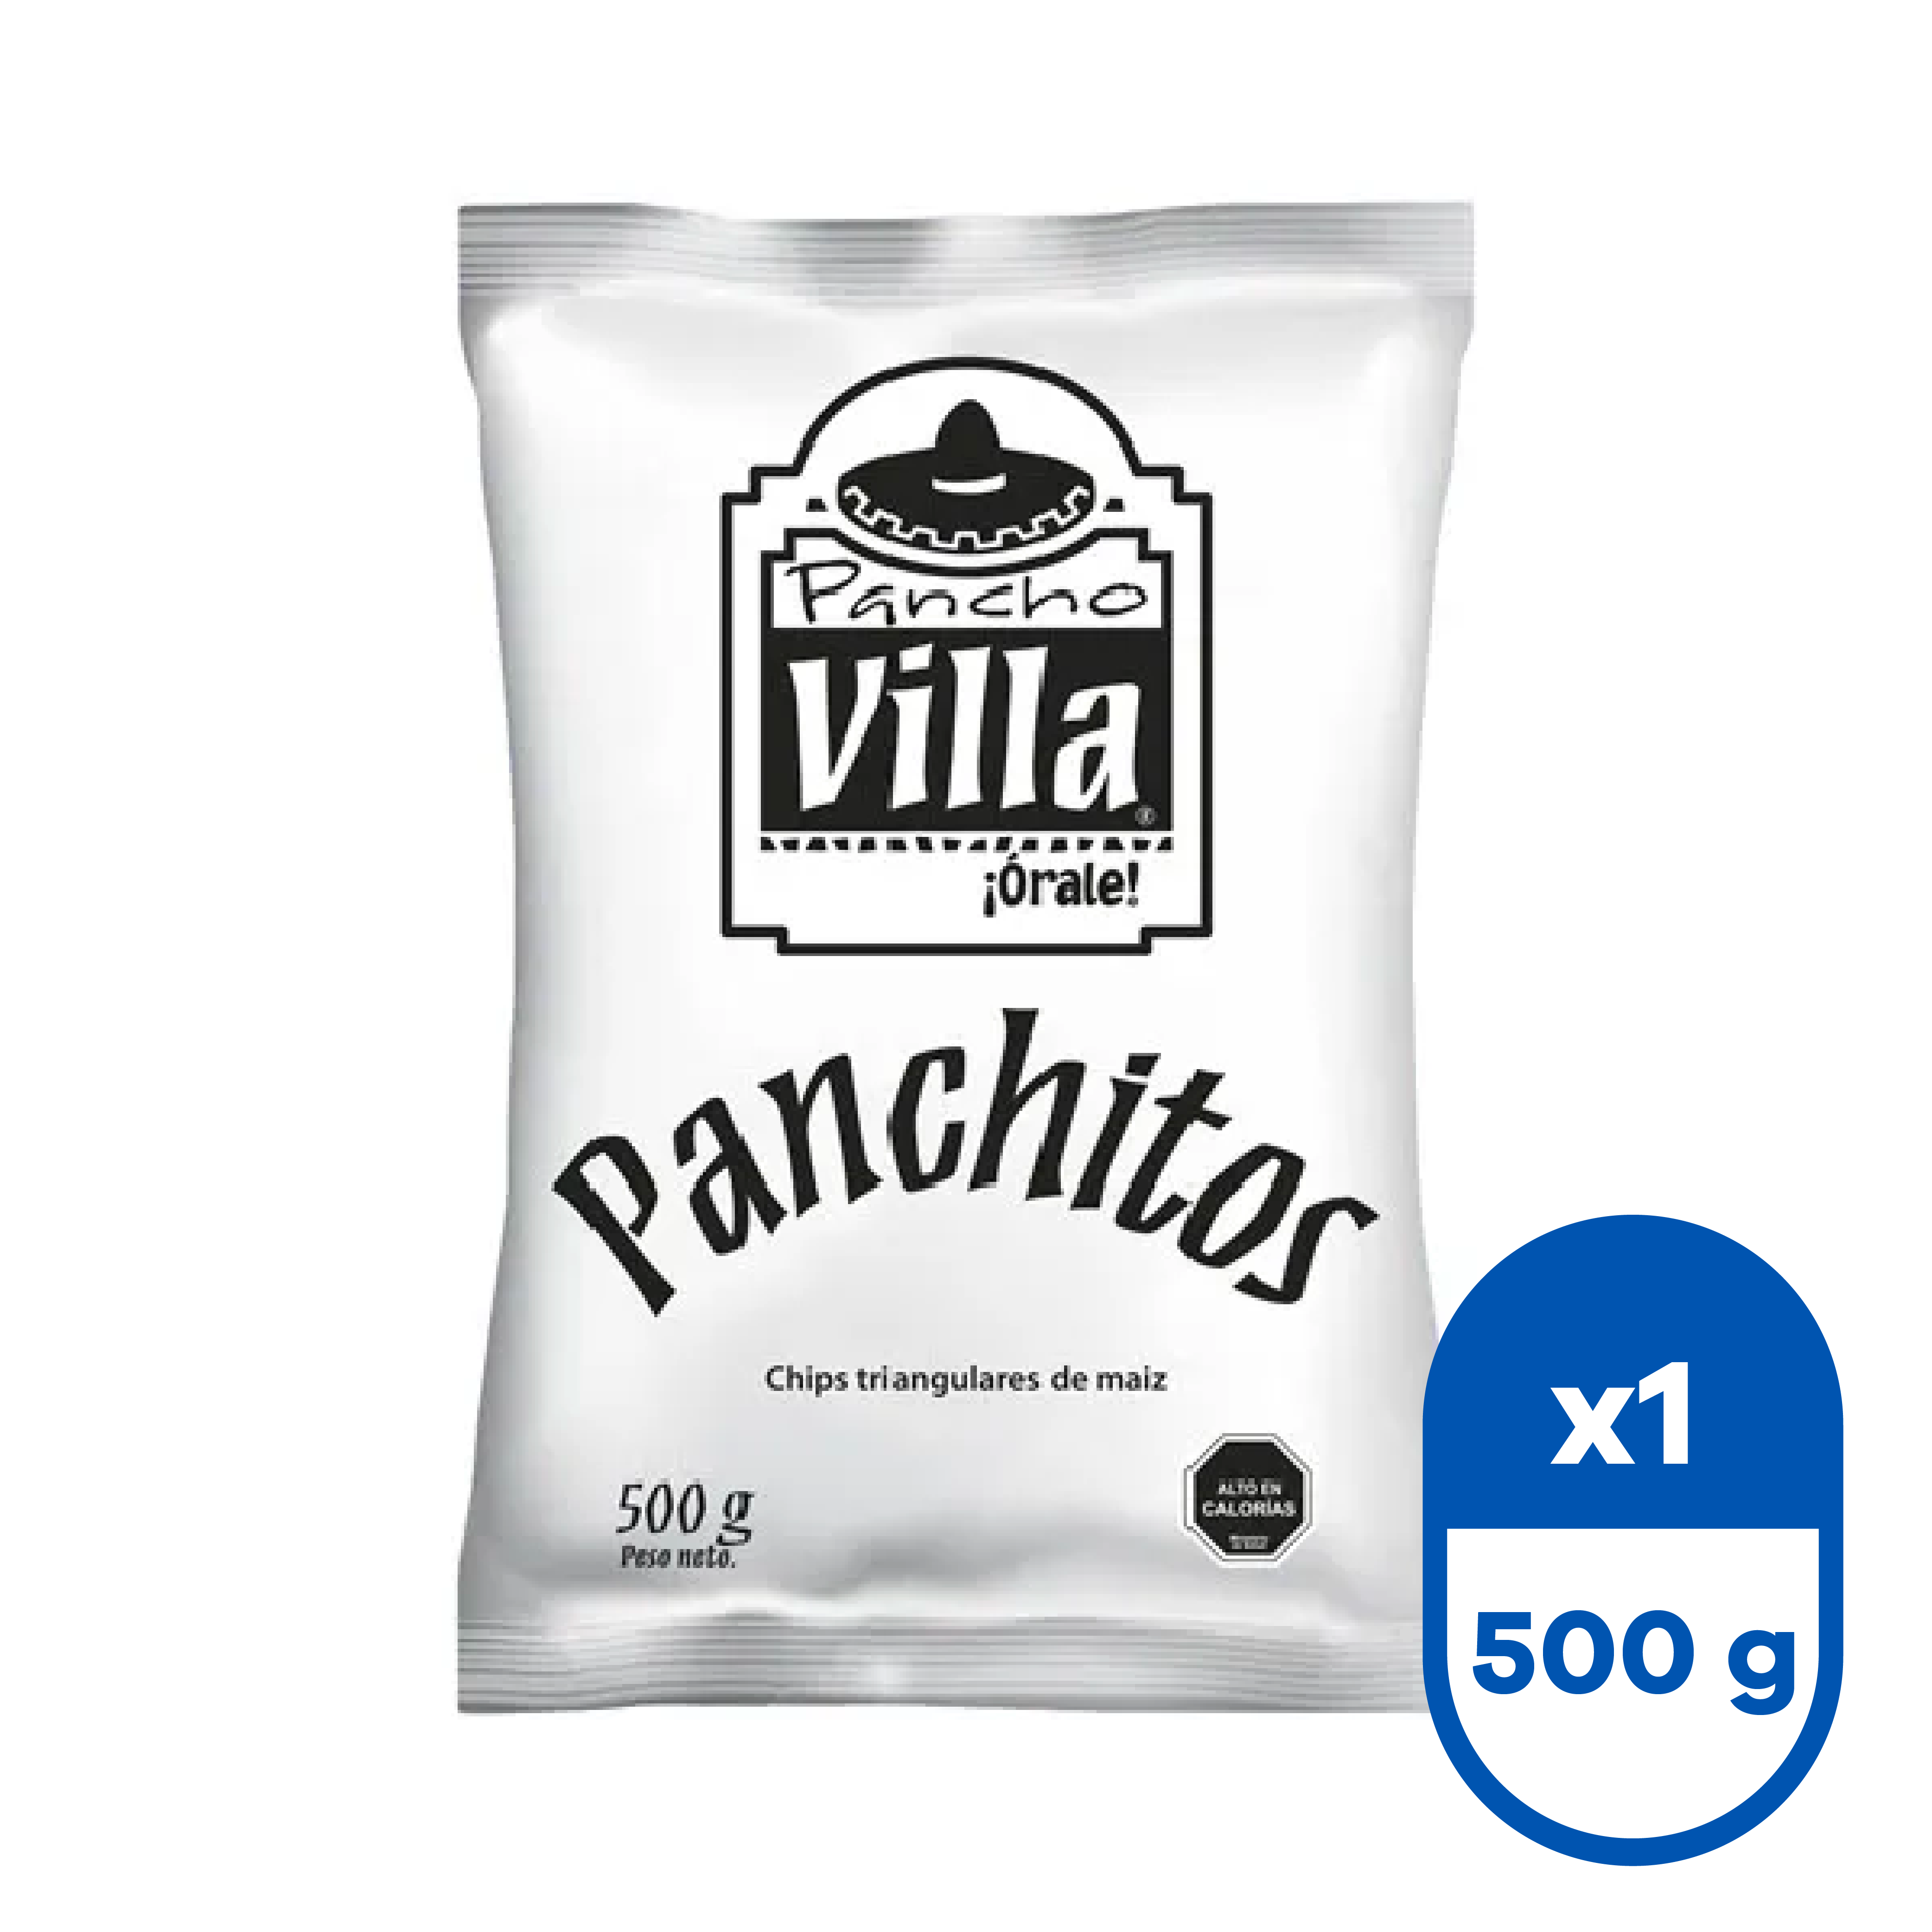 Panchitos 500 g